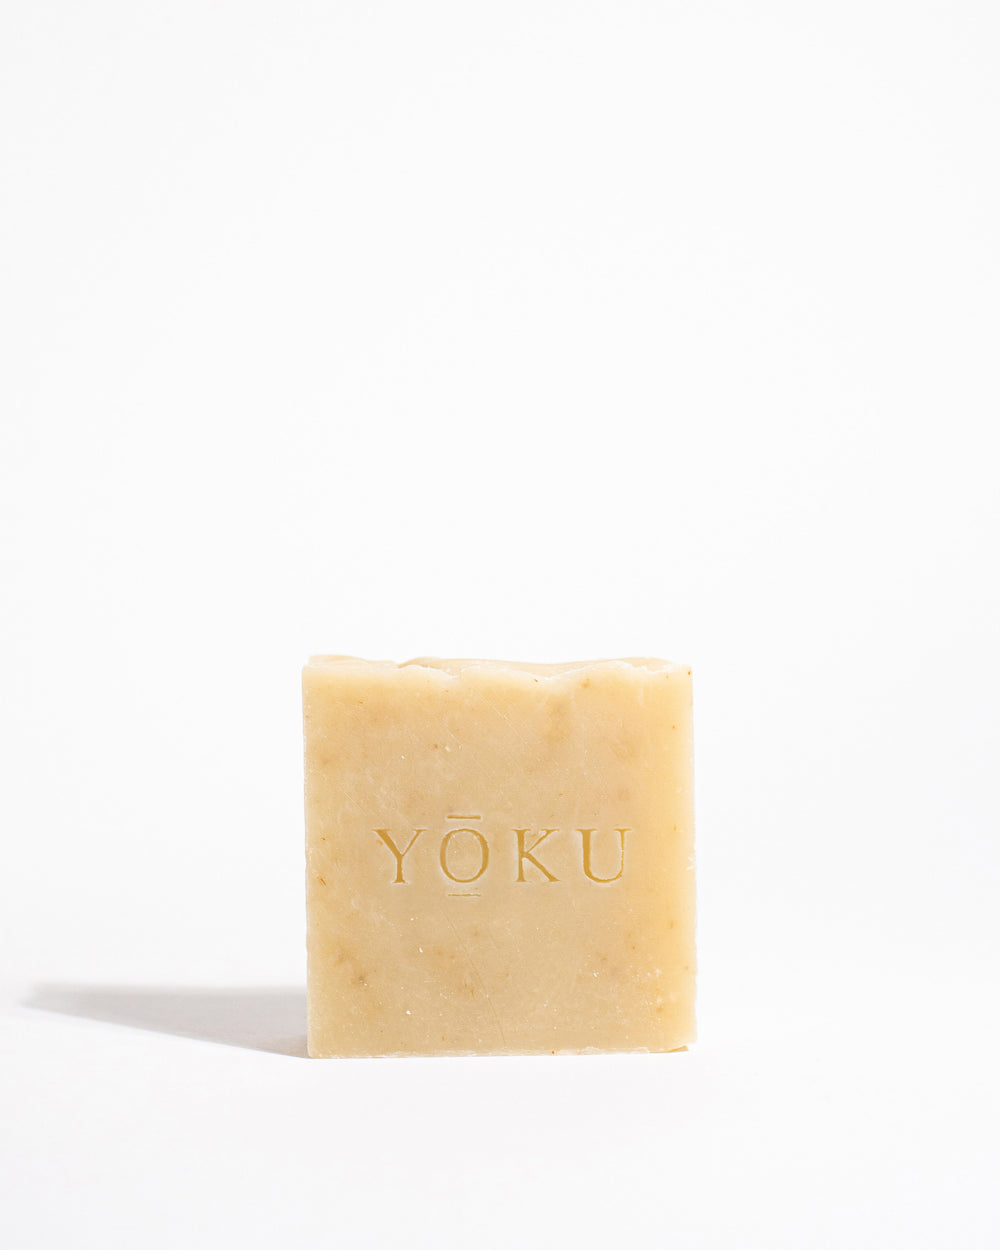 YOKU Natural Soap Bar - Lavendar & Cedarwood